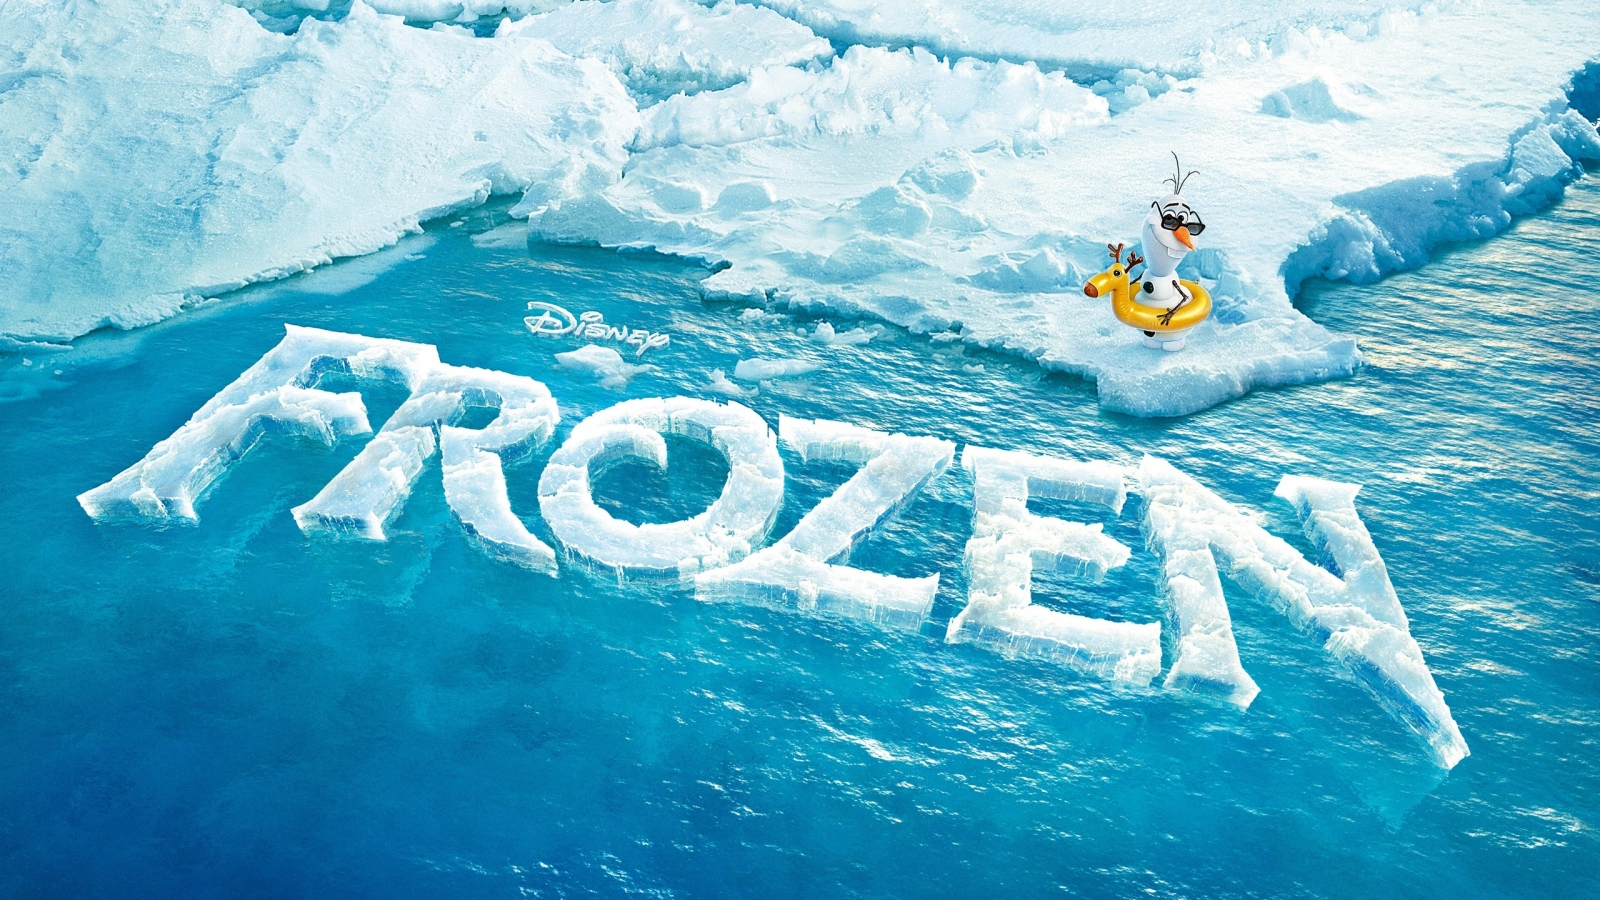 Frozen Movie for 1600 x 900 HDTV resolution